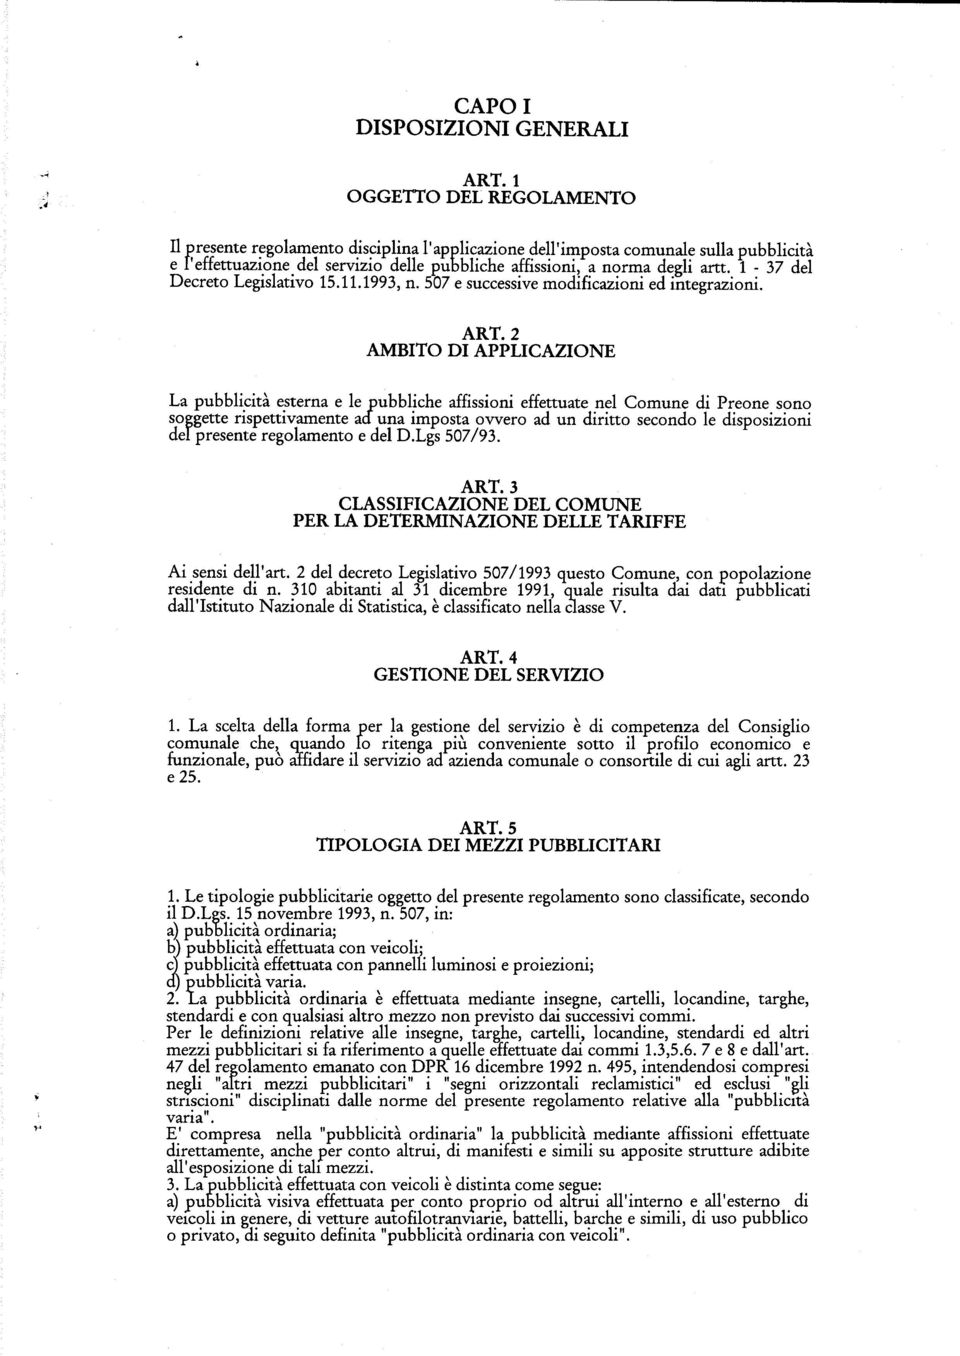 1-37 del Decreto Legislativo 15.11.1993, n. 507 e successive modificazioni ed integrazioni. ART.